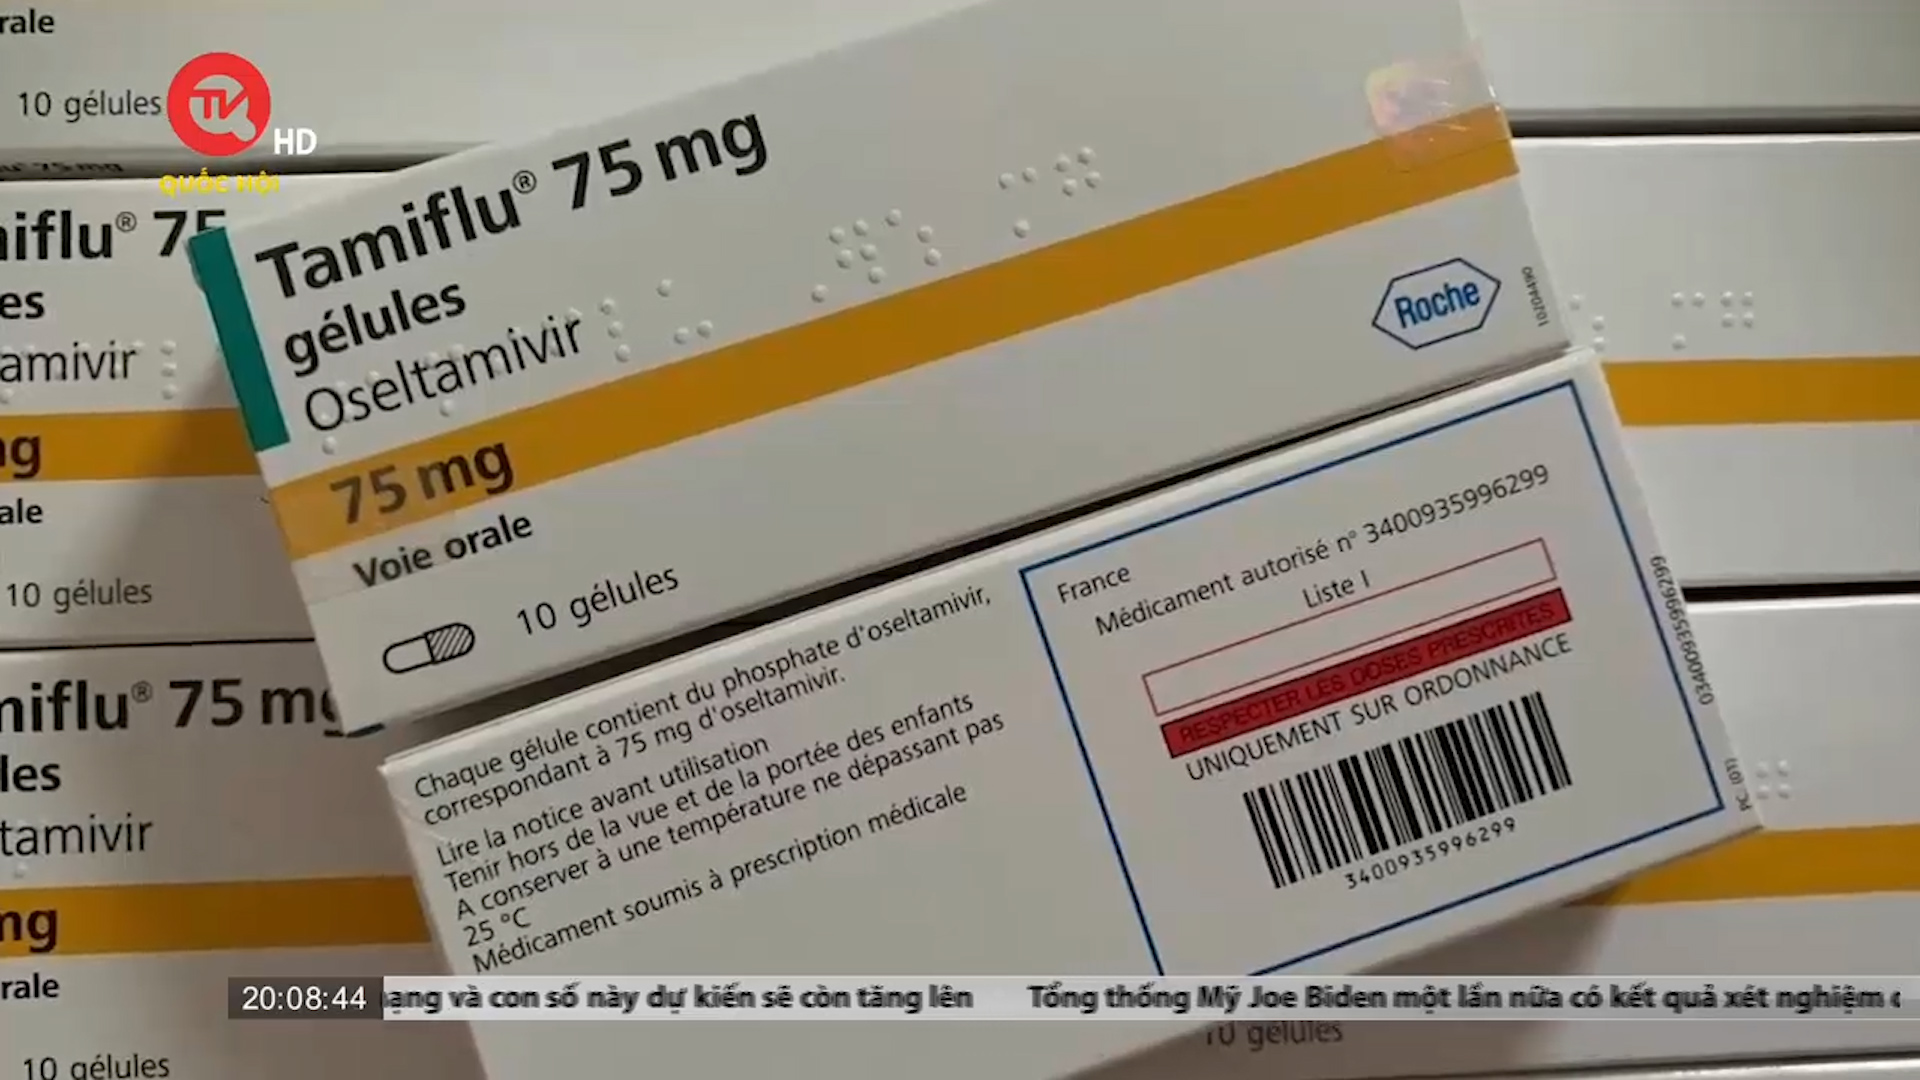 Tự ý dùng Tamiflu điều trị cúm sẽ tăng nguy cơ đề kháng thuốc